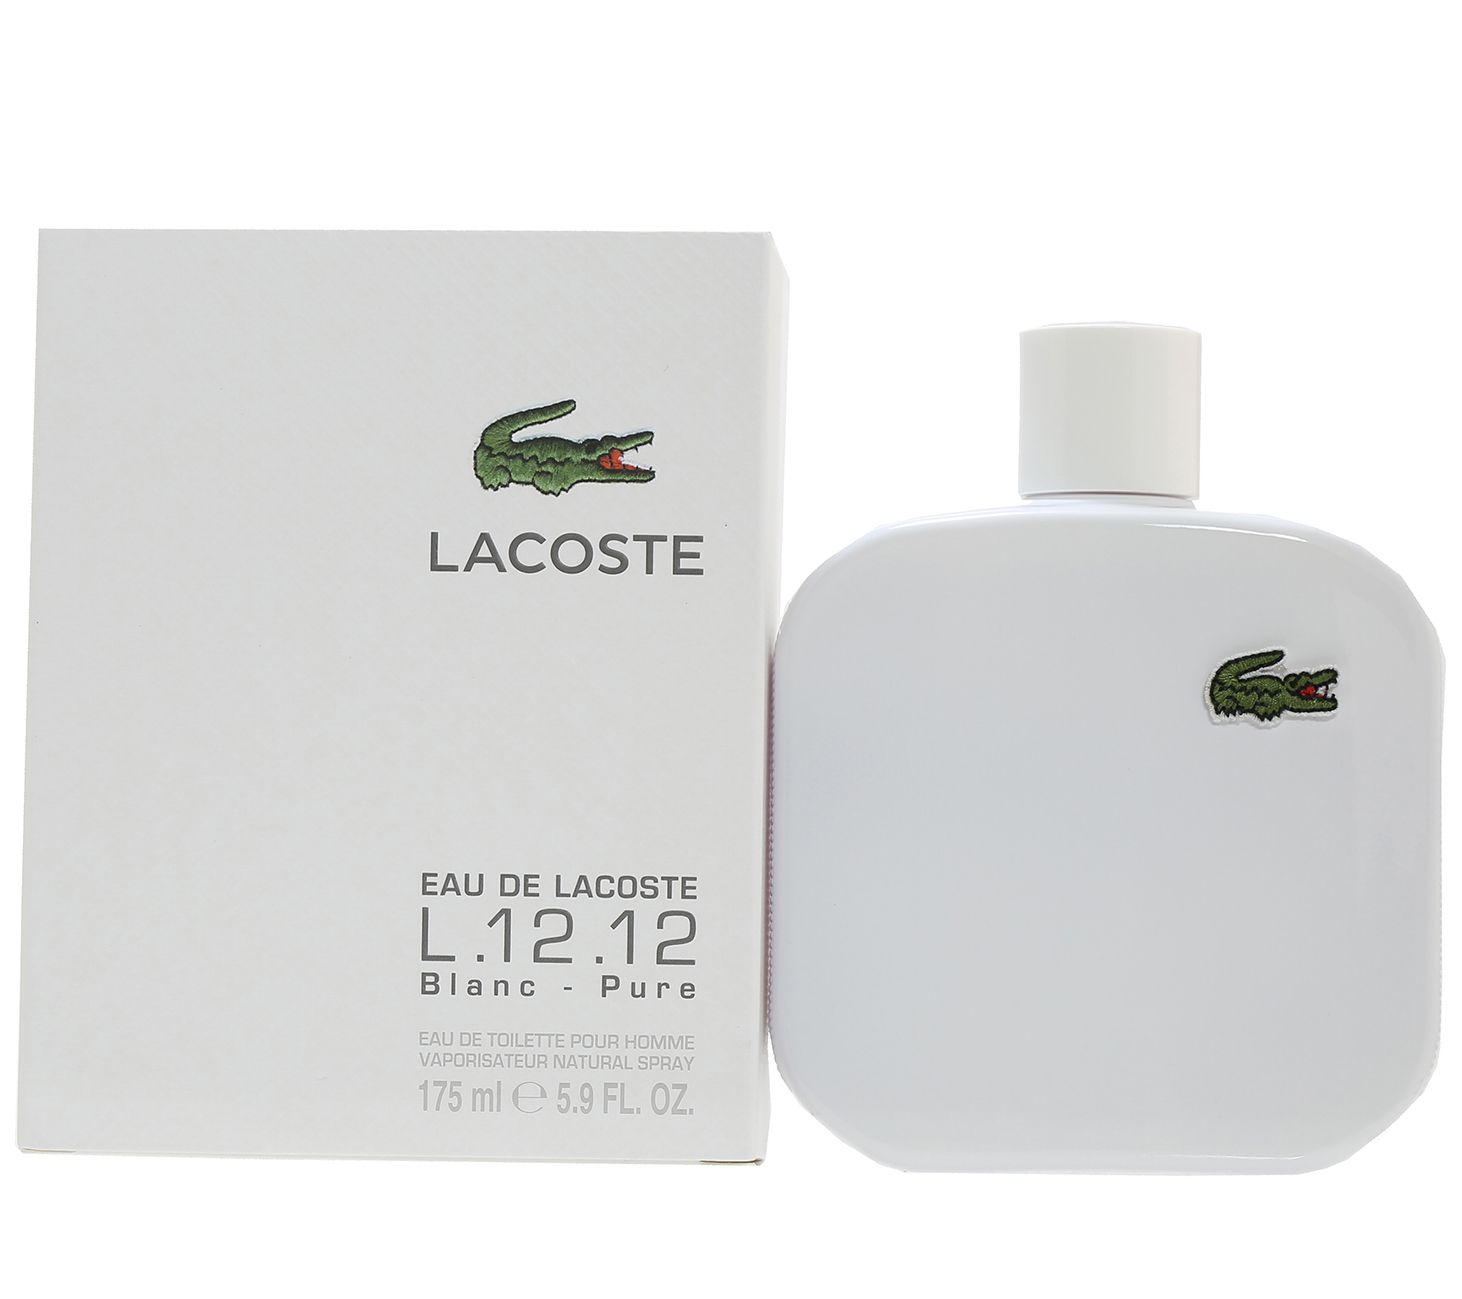 Lacoste Match Point Eau De Toilette Lacoste - Parfums pour Homme homme